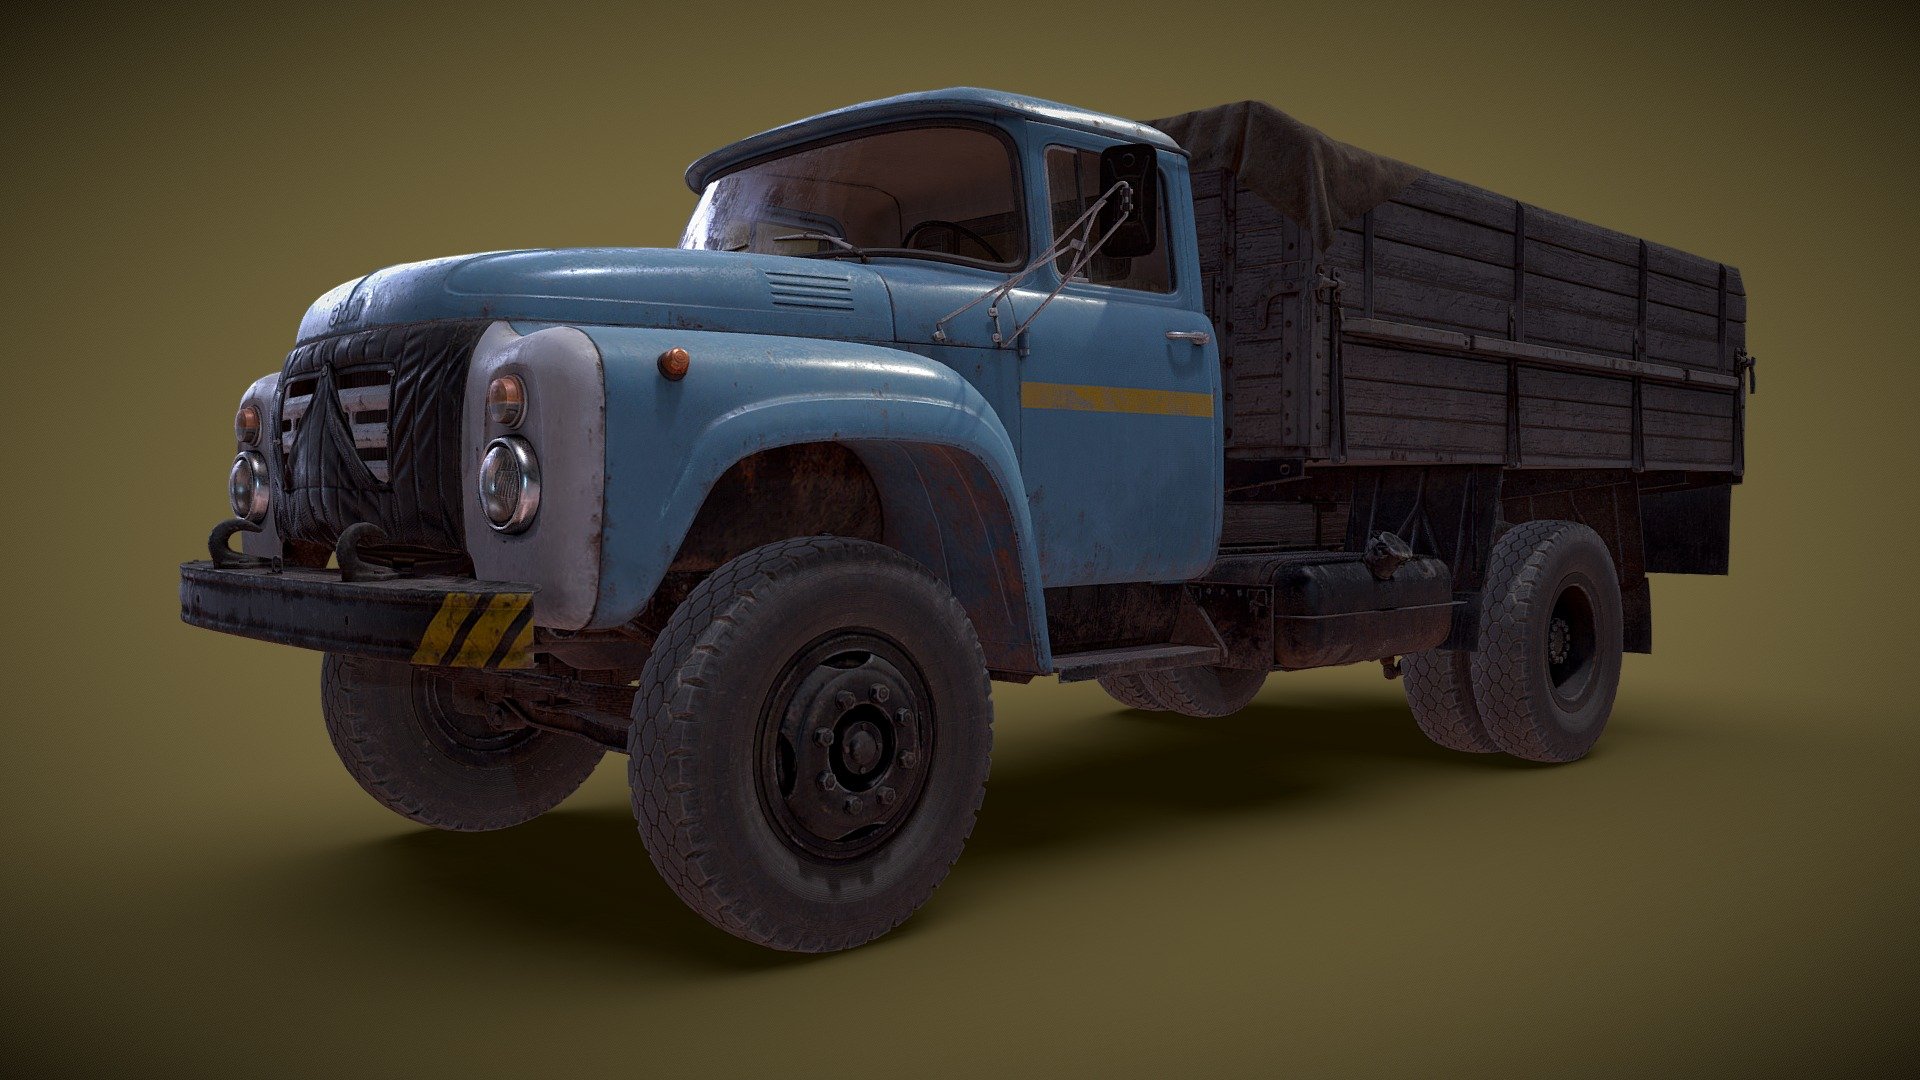 3d model of soviet truck ZIL 130 for DEADSIDE game project - Soviet flatbed truck. ZIL 130 - 3D model by dartp 3d model